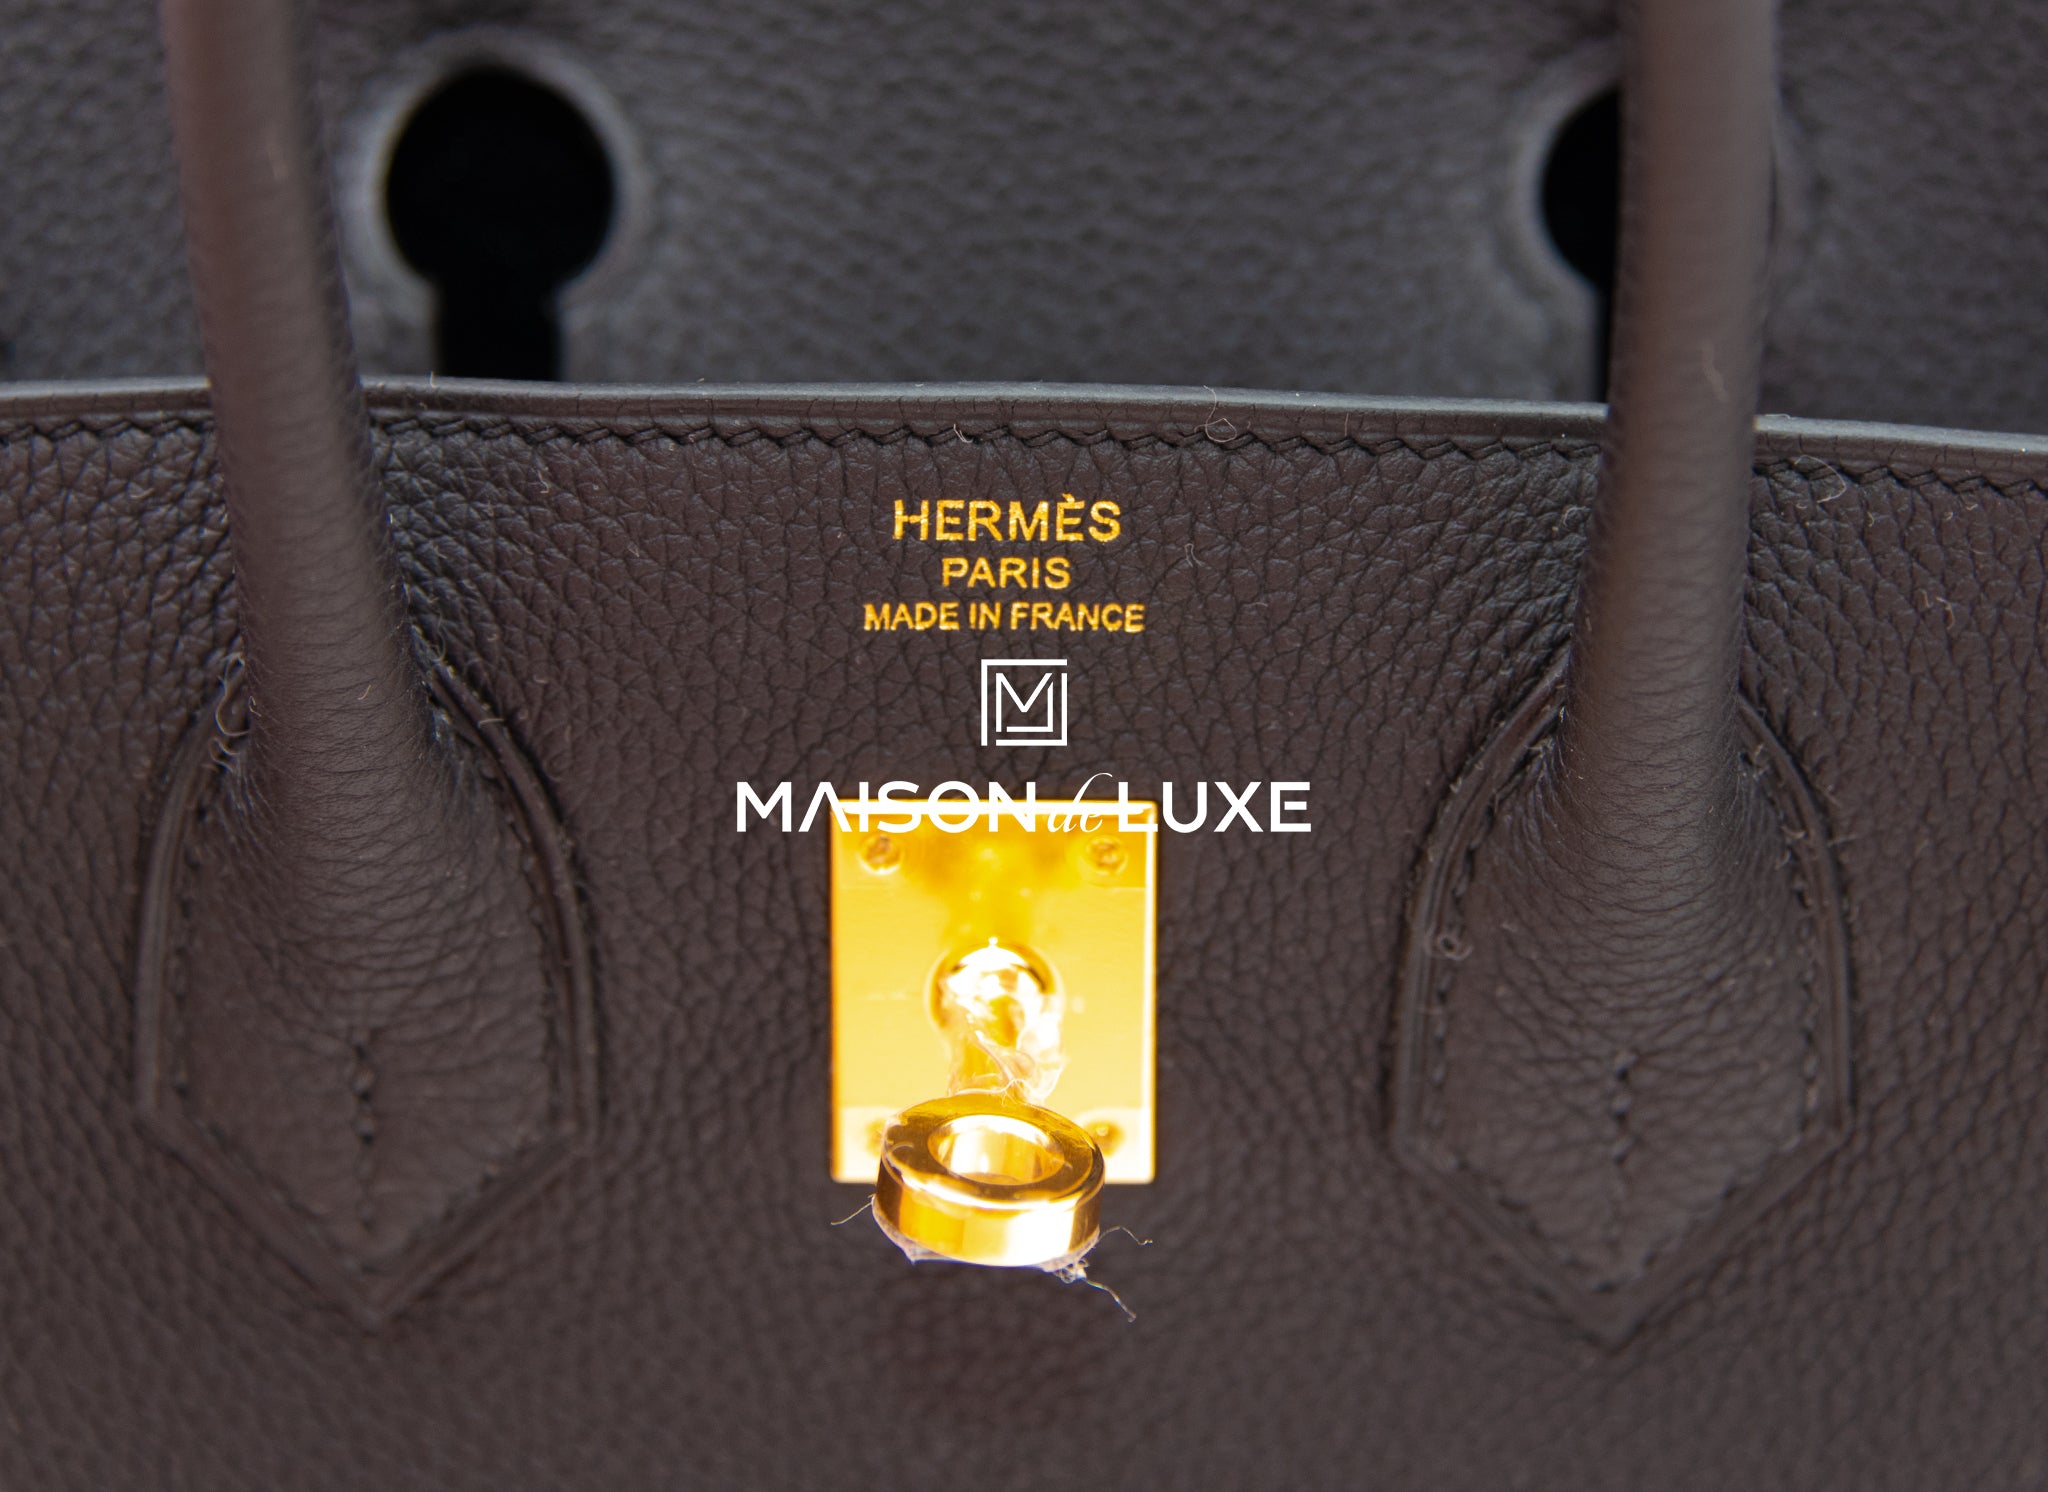 Hermes Birkin bag 25 Black Togo leather Silver hardware